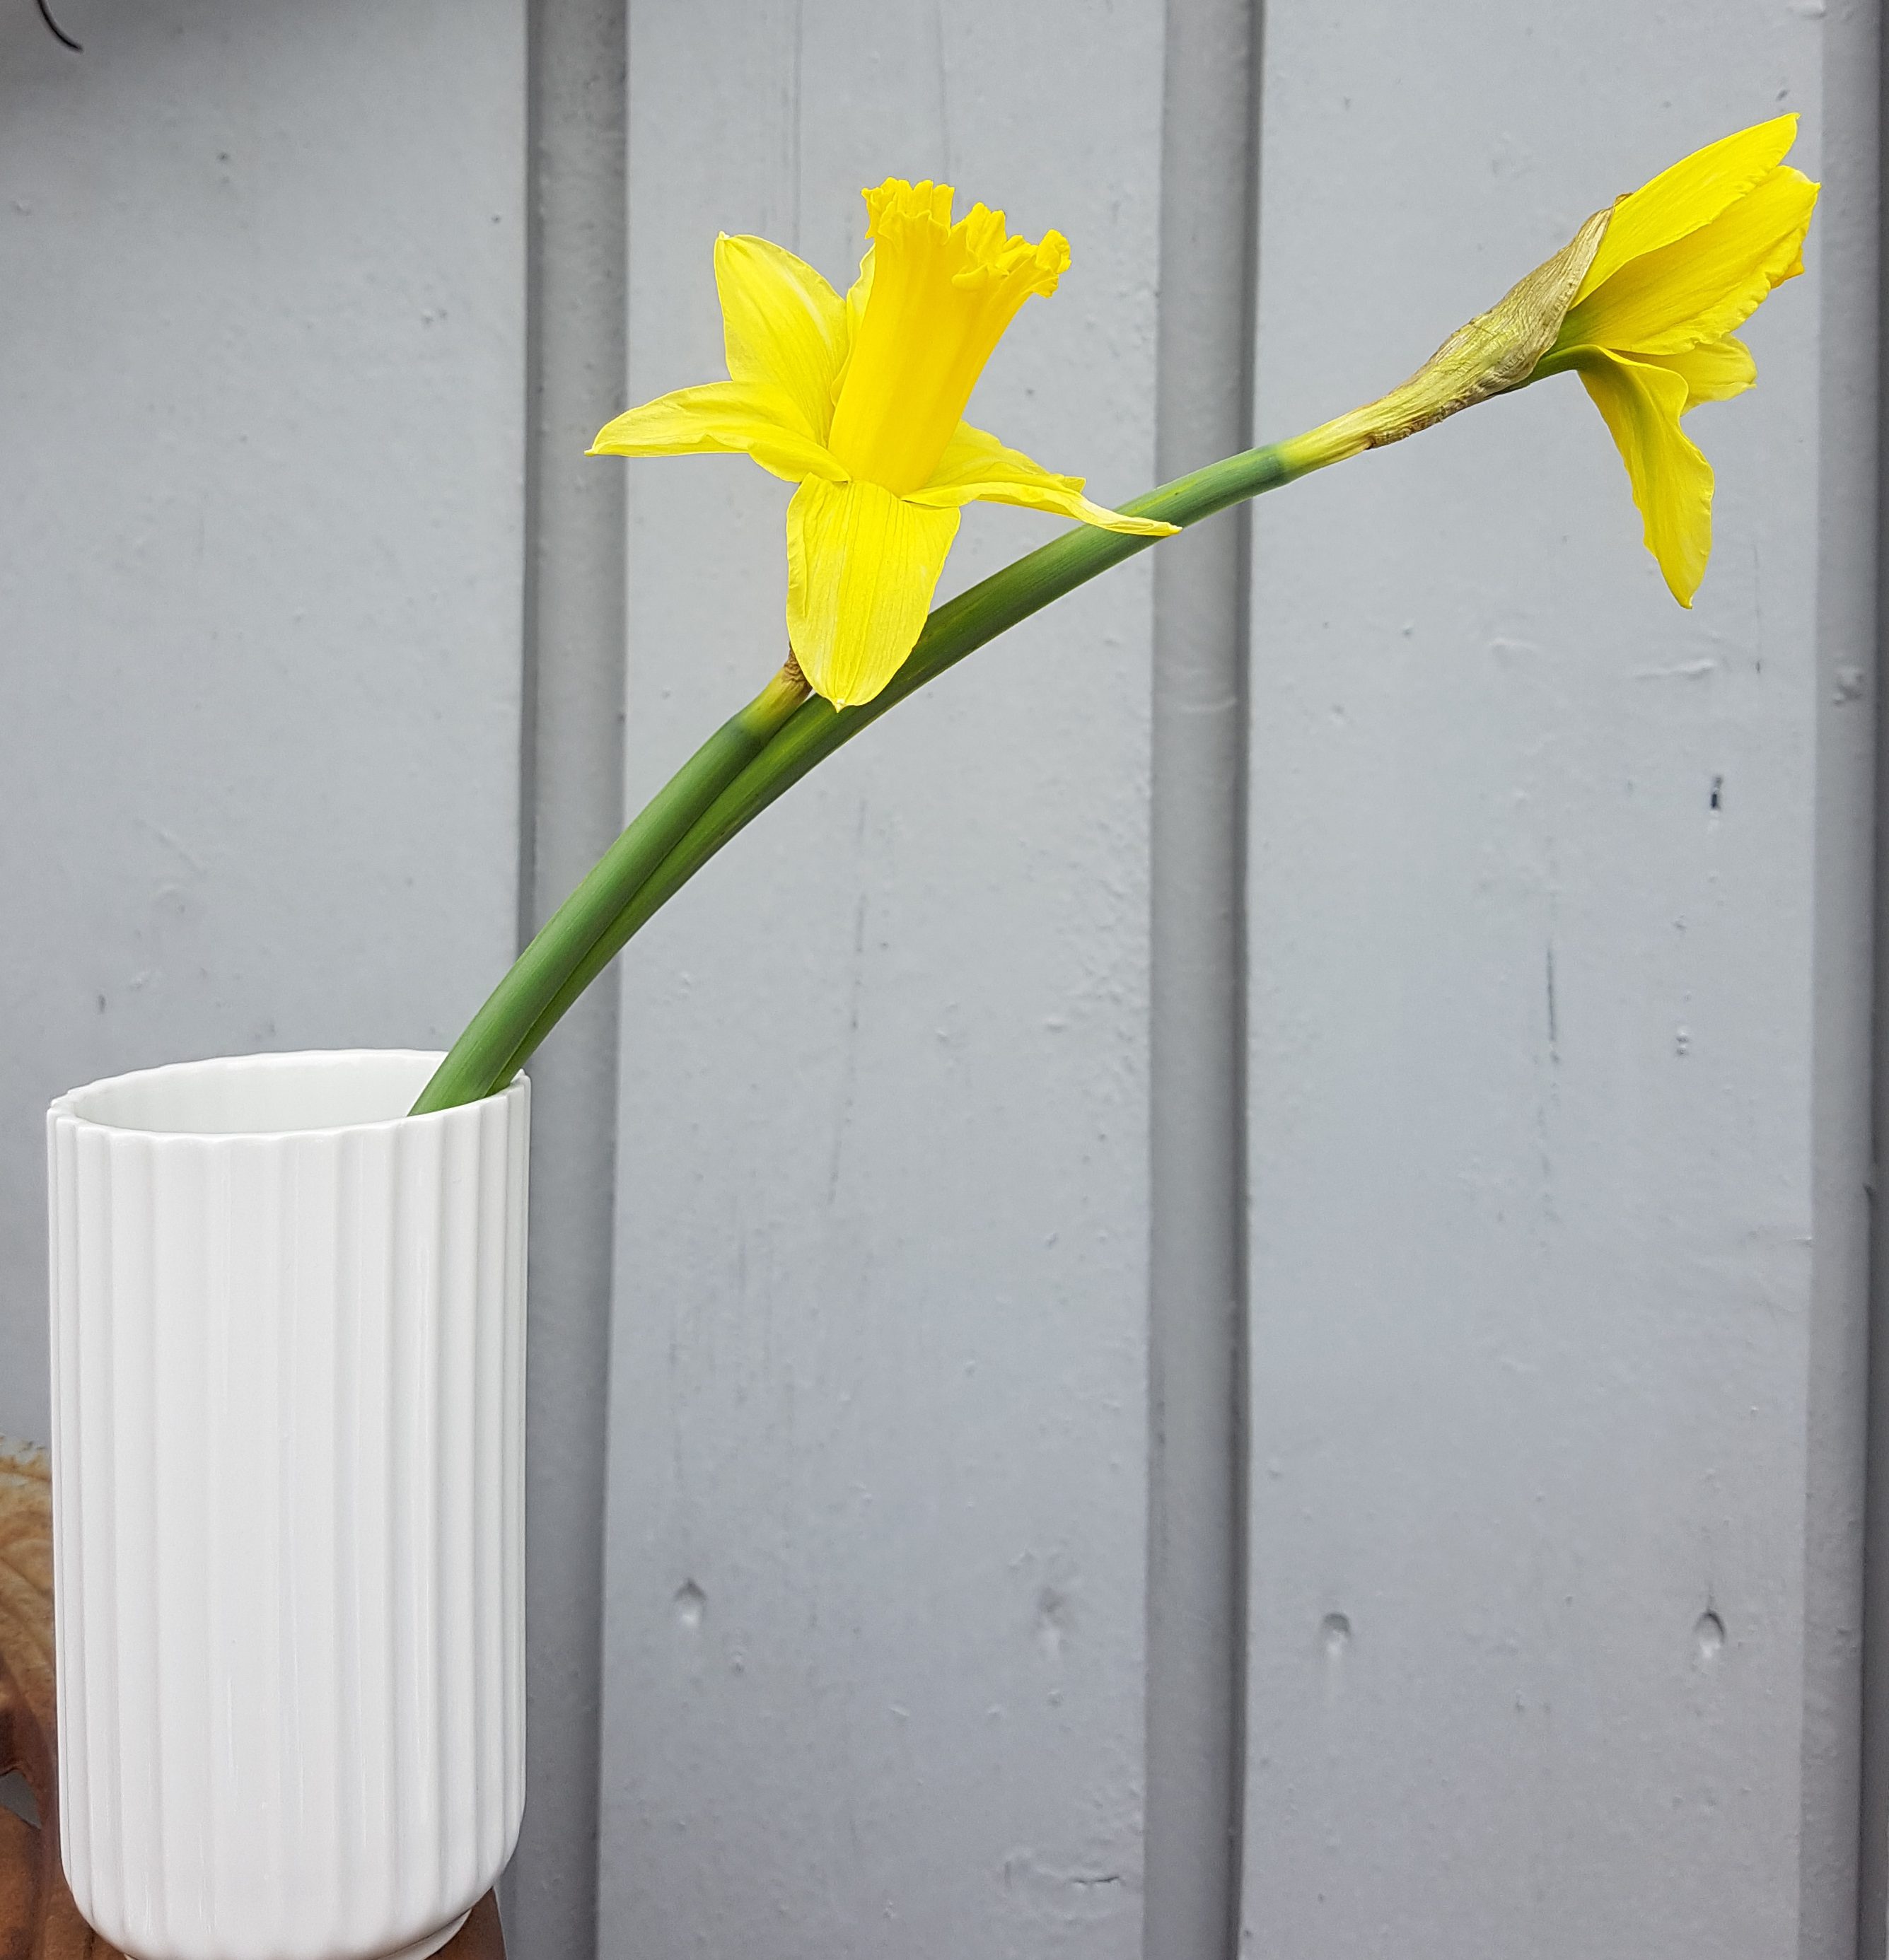 Påskelilje i vase er billig, enkelt og relativt holdbar vårglede innendørs.  - SkarpiHagen